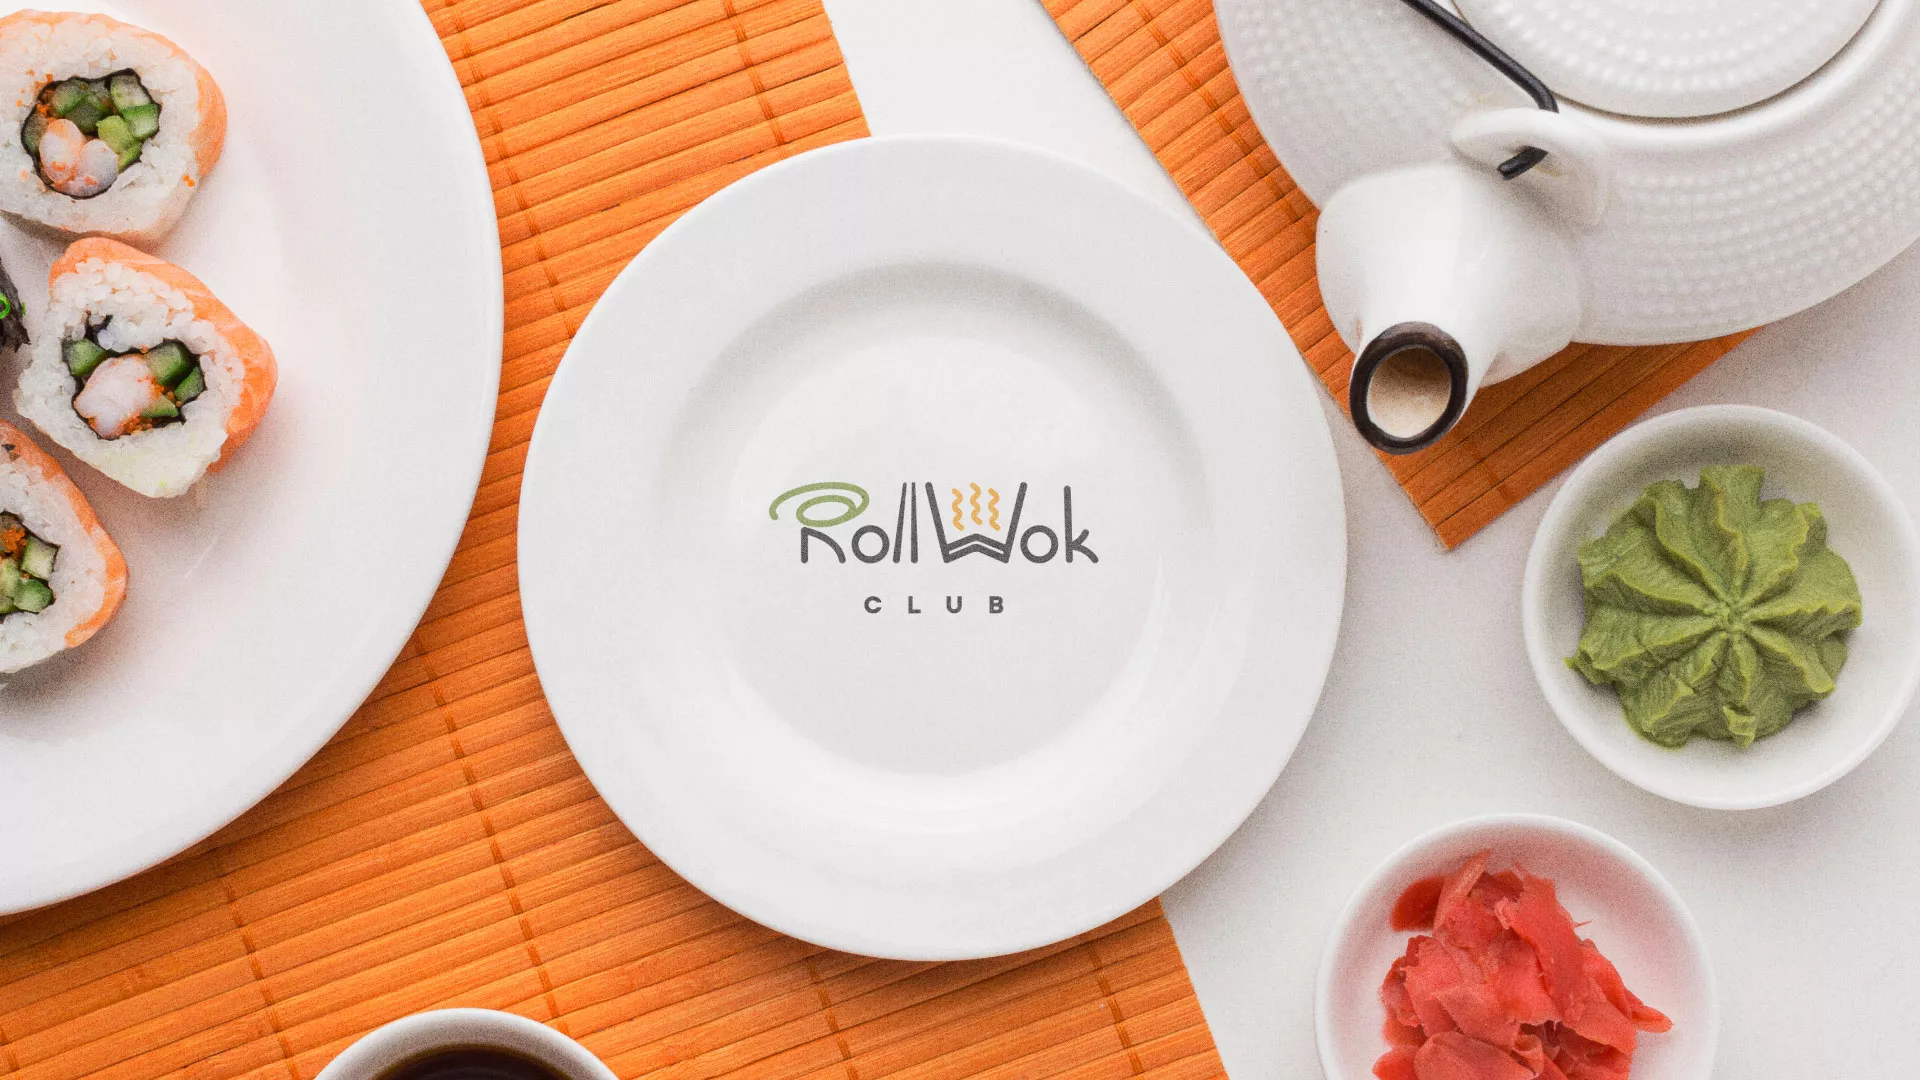 Разработка логотипа и фирменного стиля суши-бара «Roll Wok Club» в Наро-Фоминске